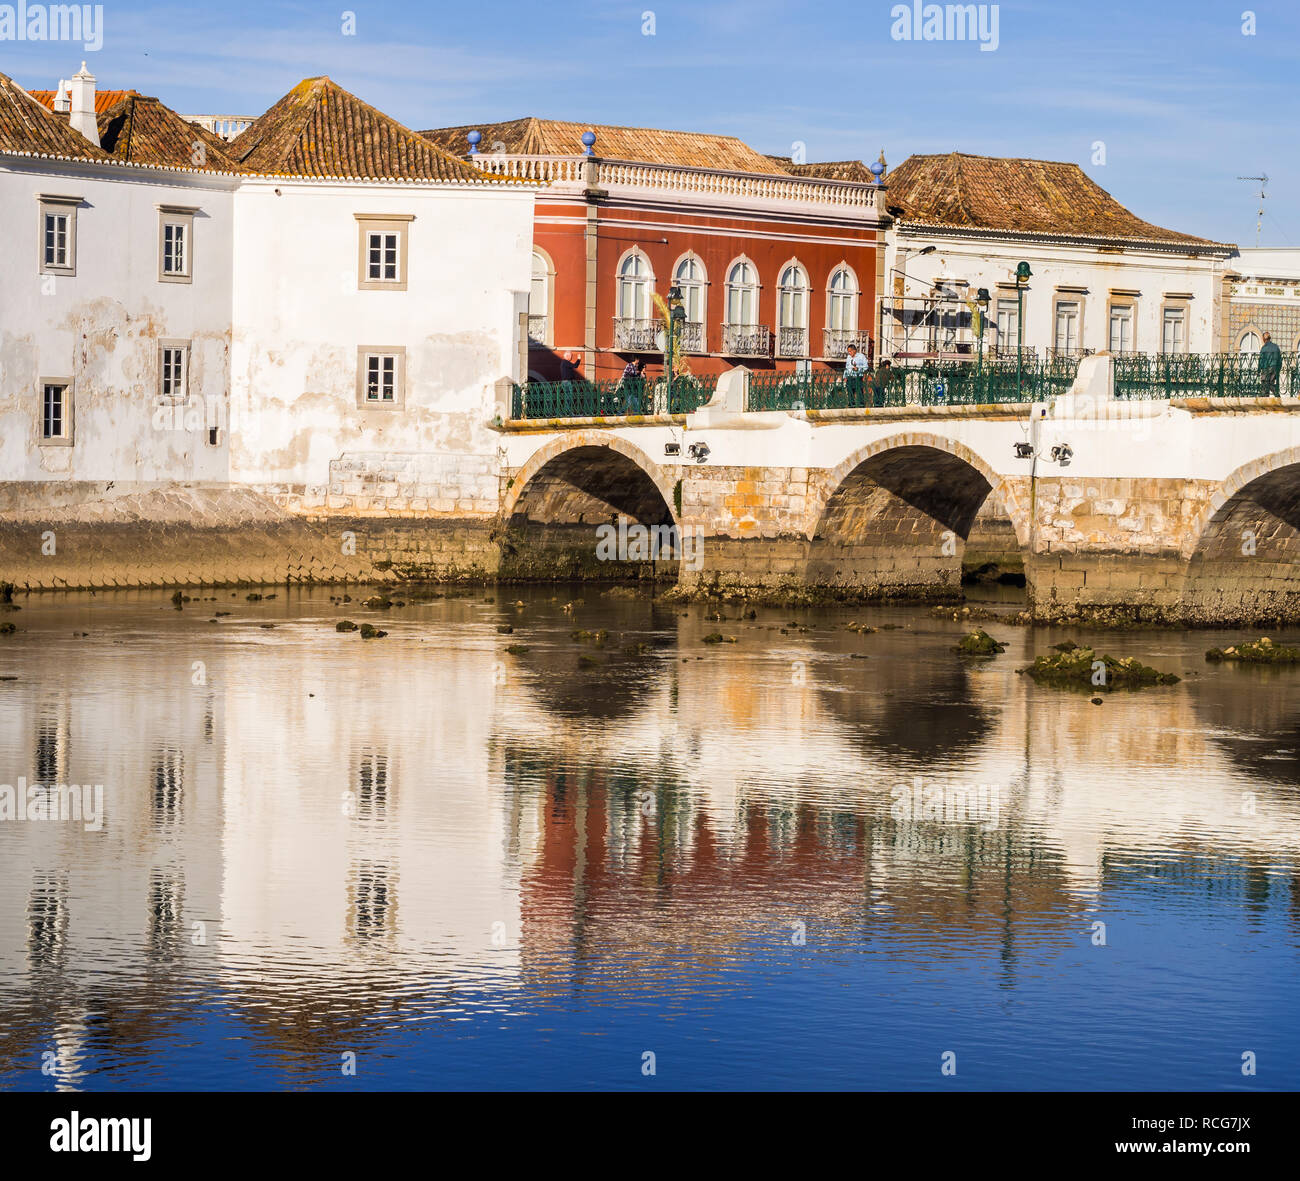 TAVIRA, PORTUGAL - Mars 28, 2018 : vue sur la vieille ville de Tavira, dans la région de l'Algarve, au sud du Portugal. Banque D'Images